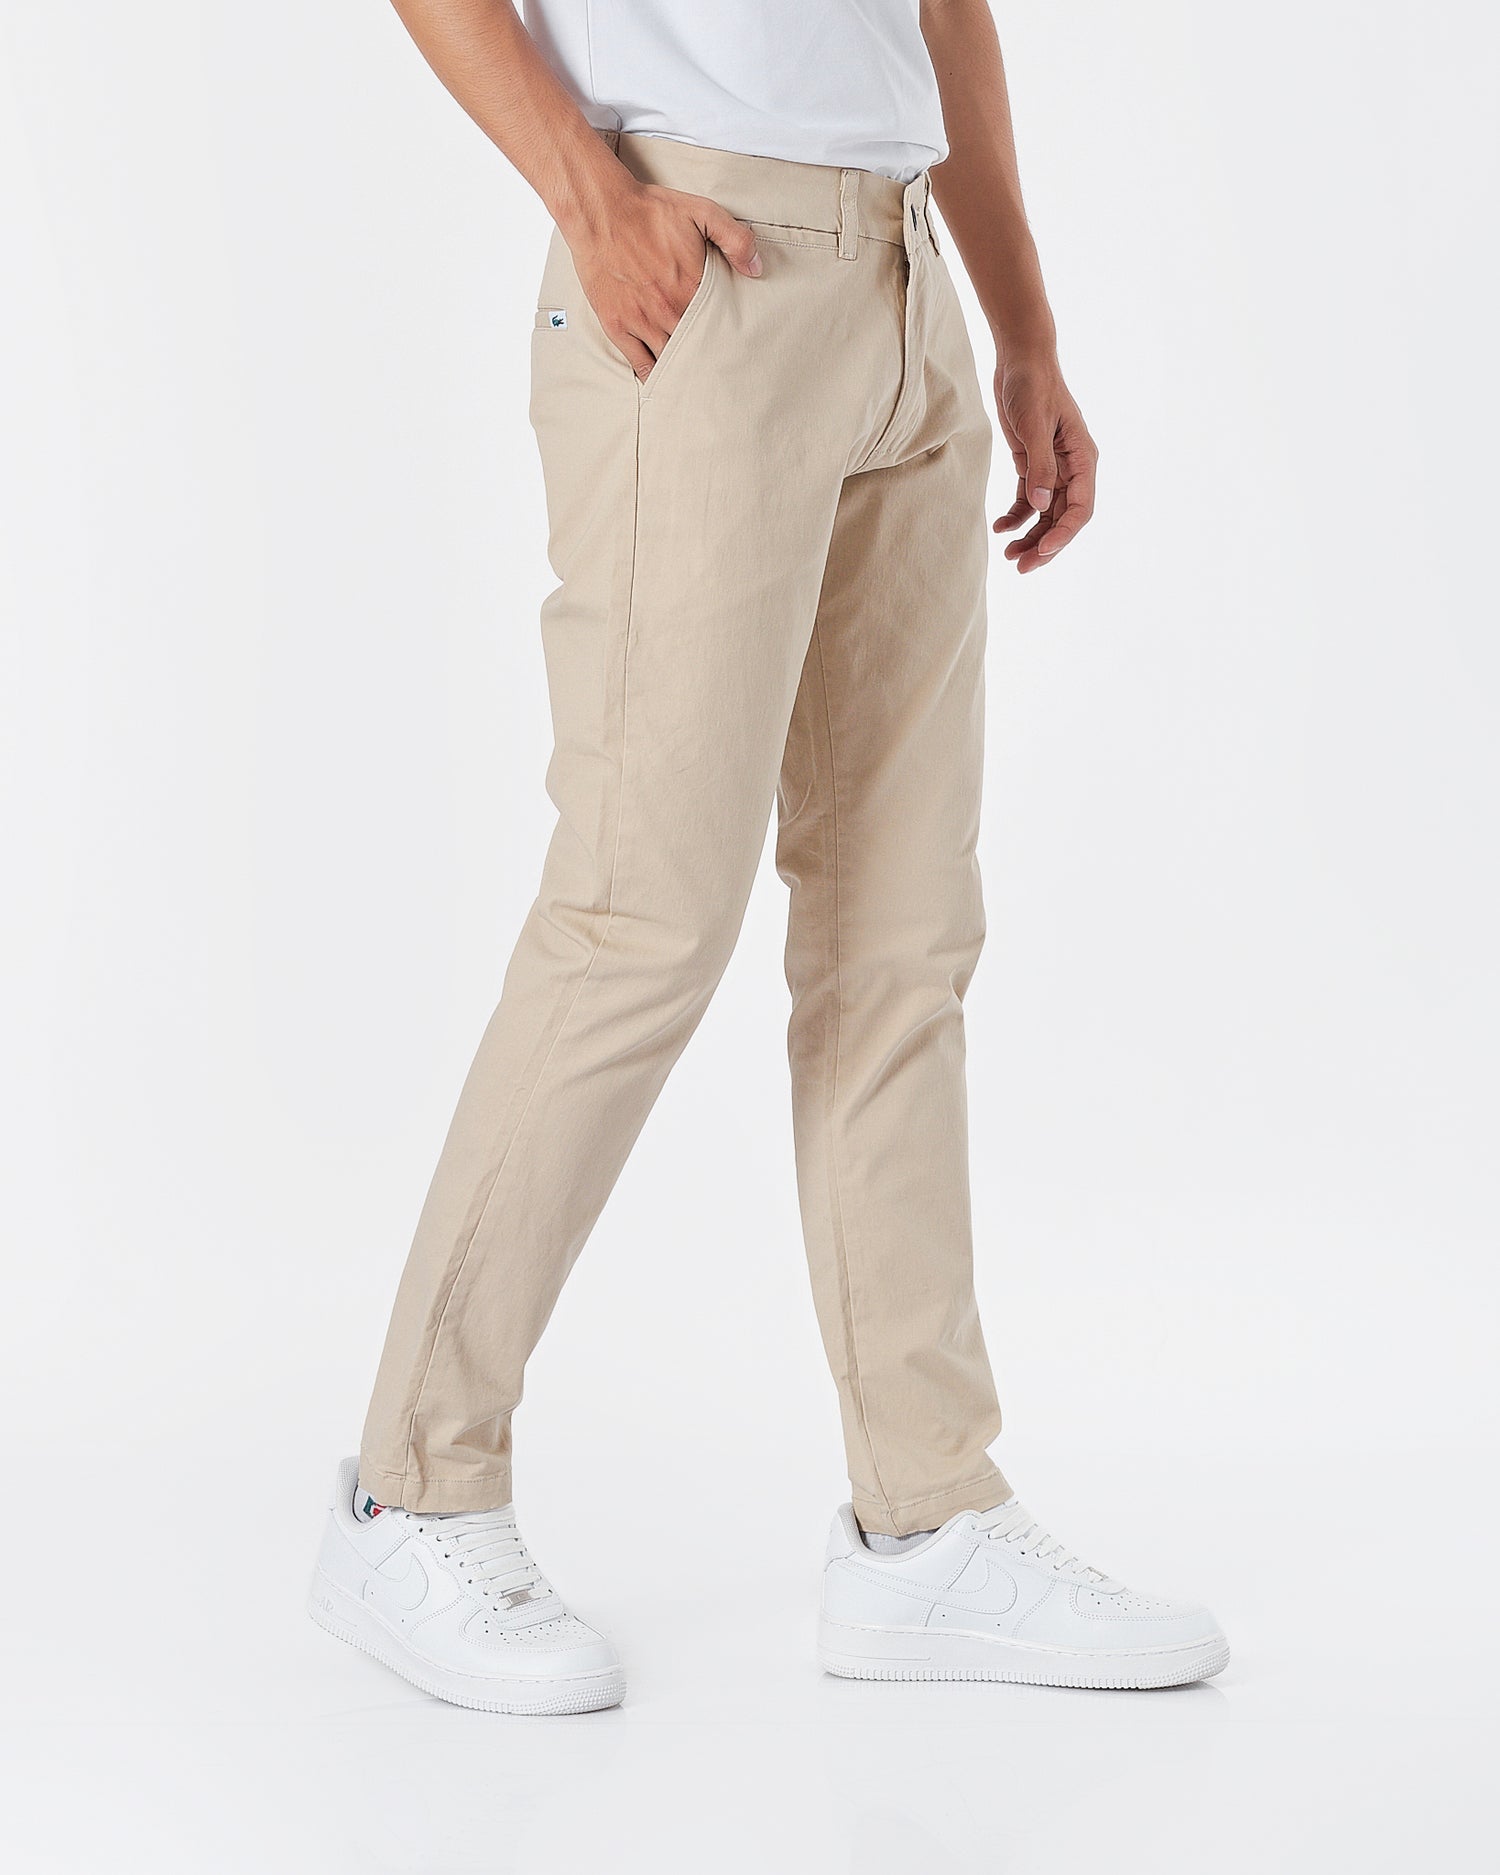 LAC Plain Color Men Cream Khaki Pants 22.90